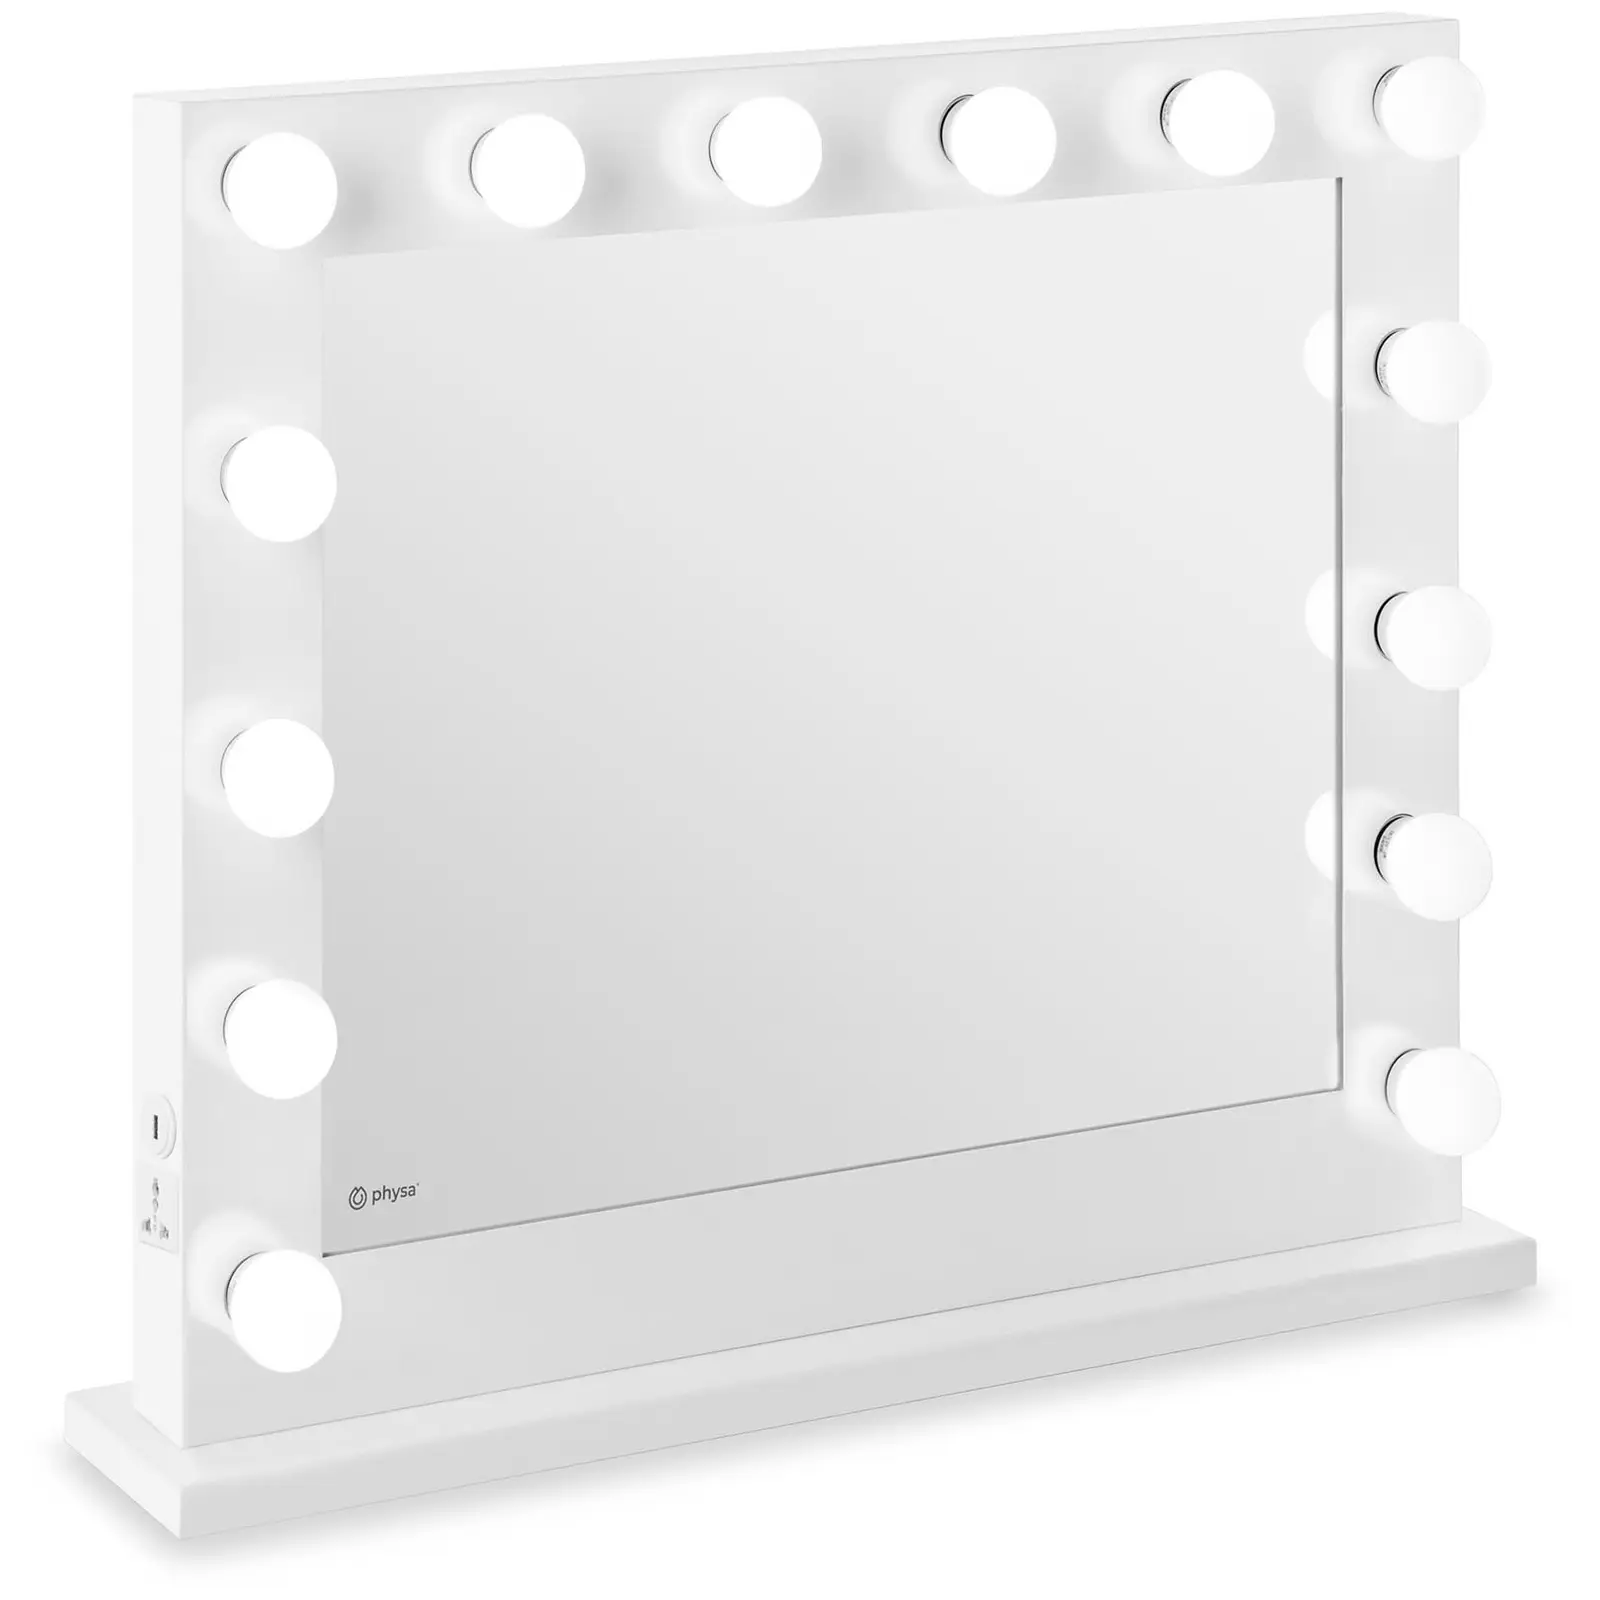 LED Vanity Mirror - white - 14 LEDs - square